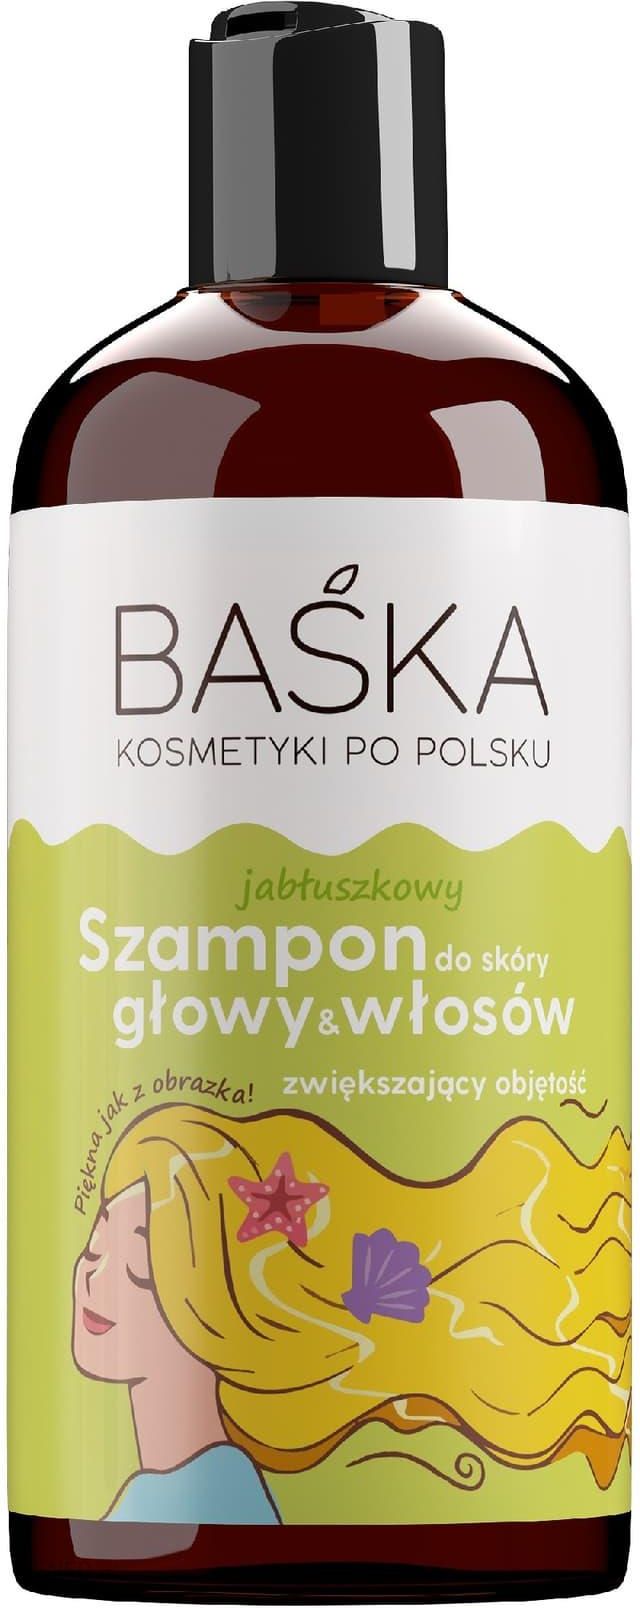 polskie kosmetyki szampon w tubce